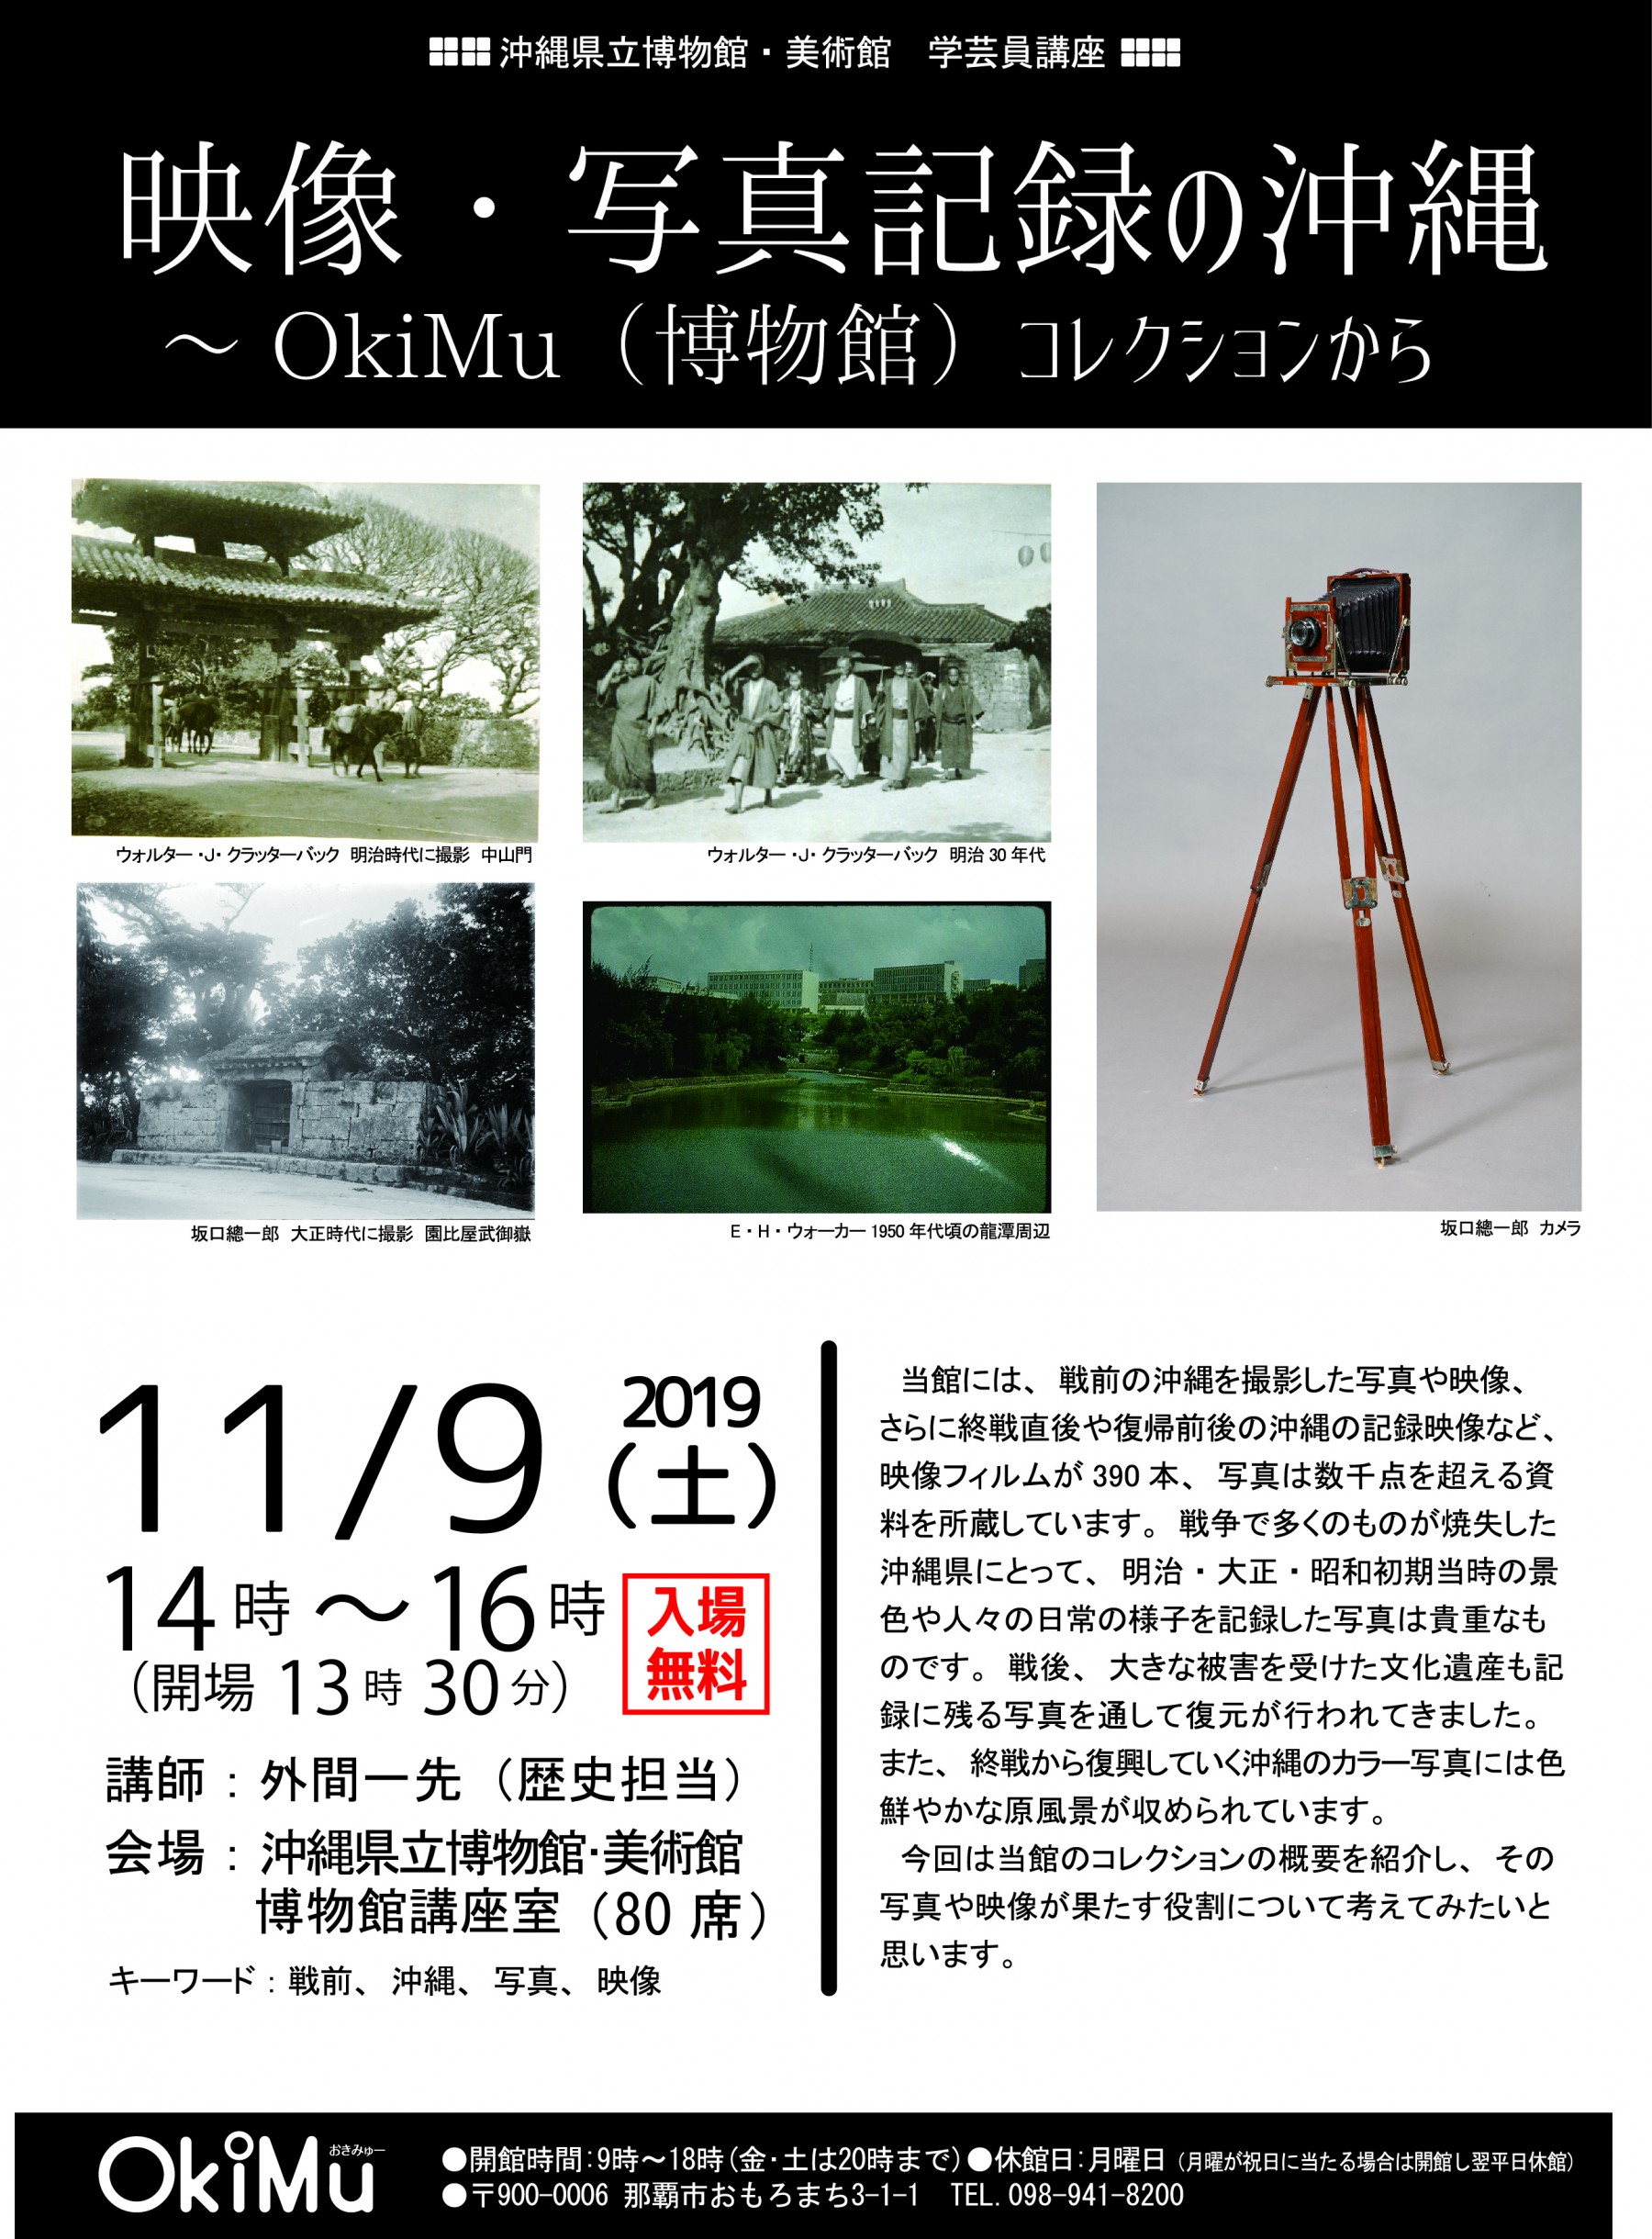 博物館学芸員講座「映像・写真記録の沖縄～OkiMu（博物館）コレクションから」